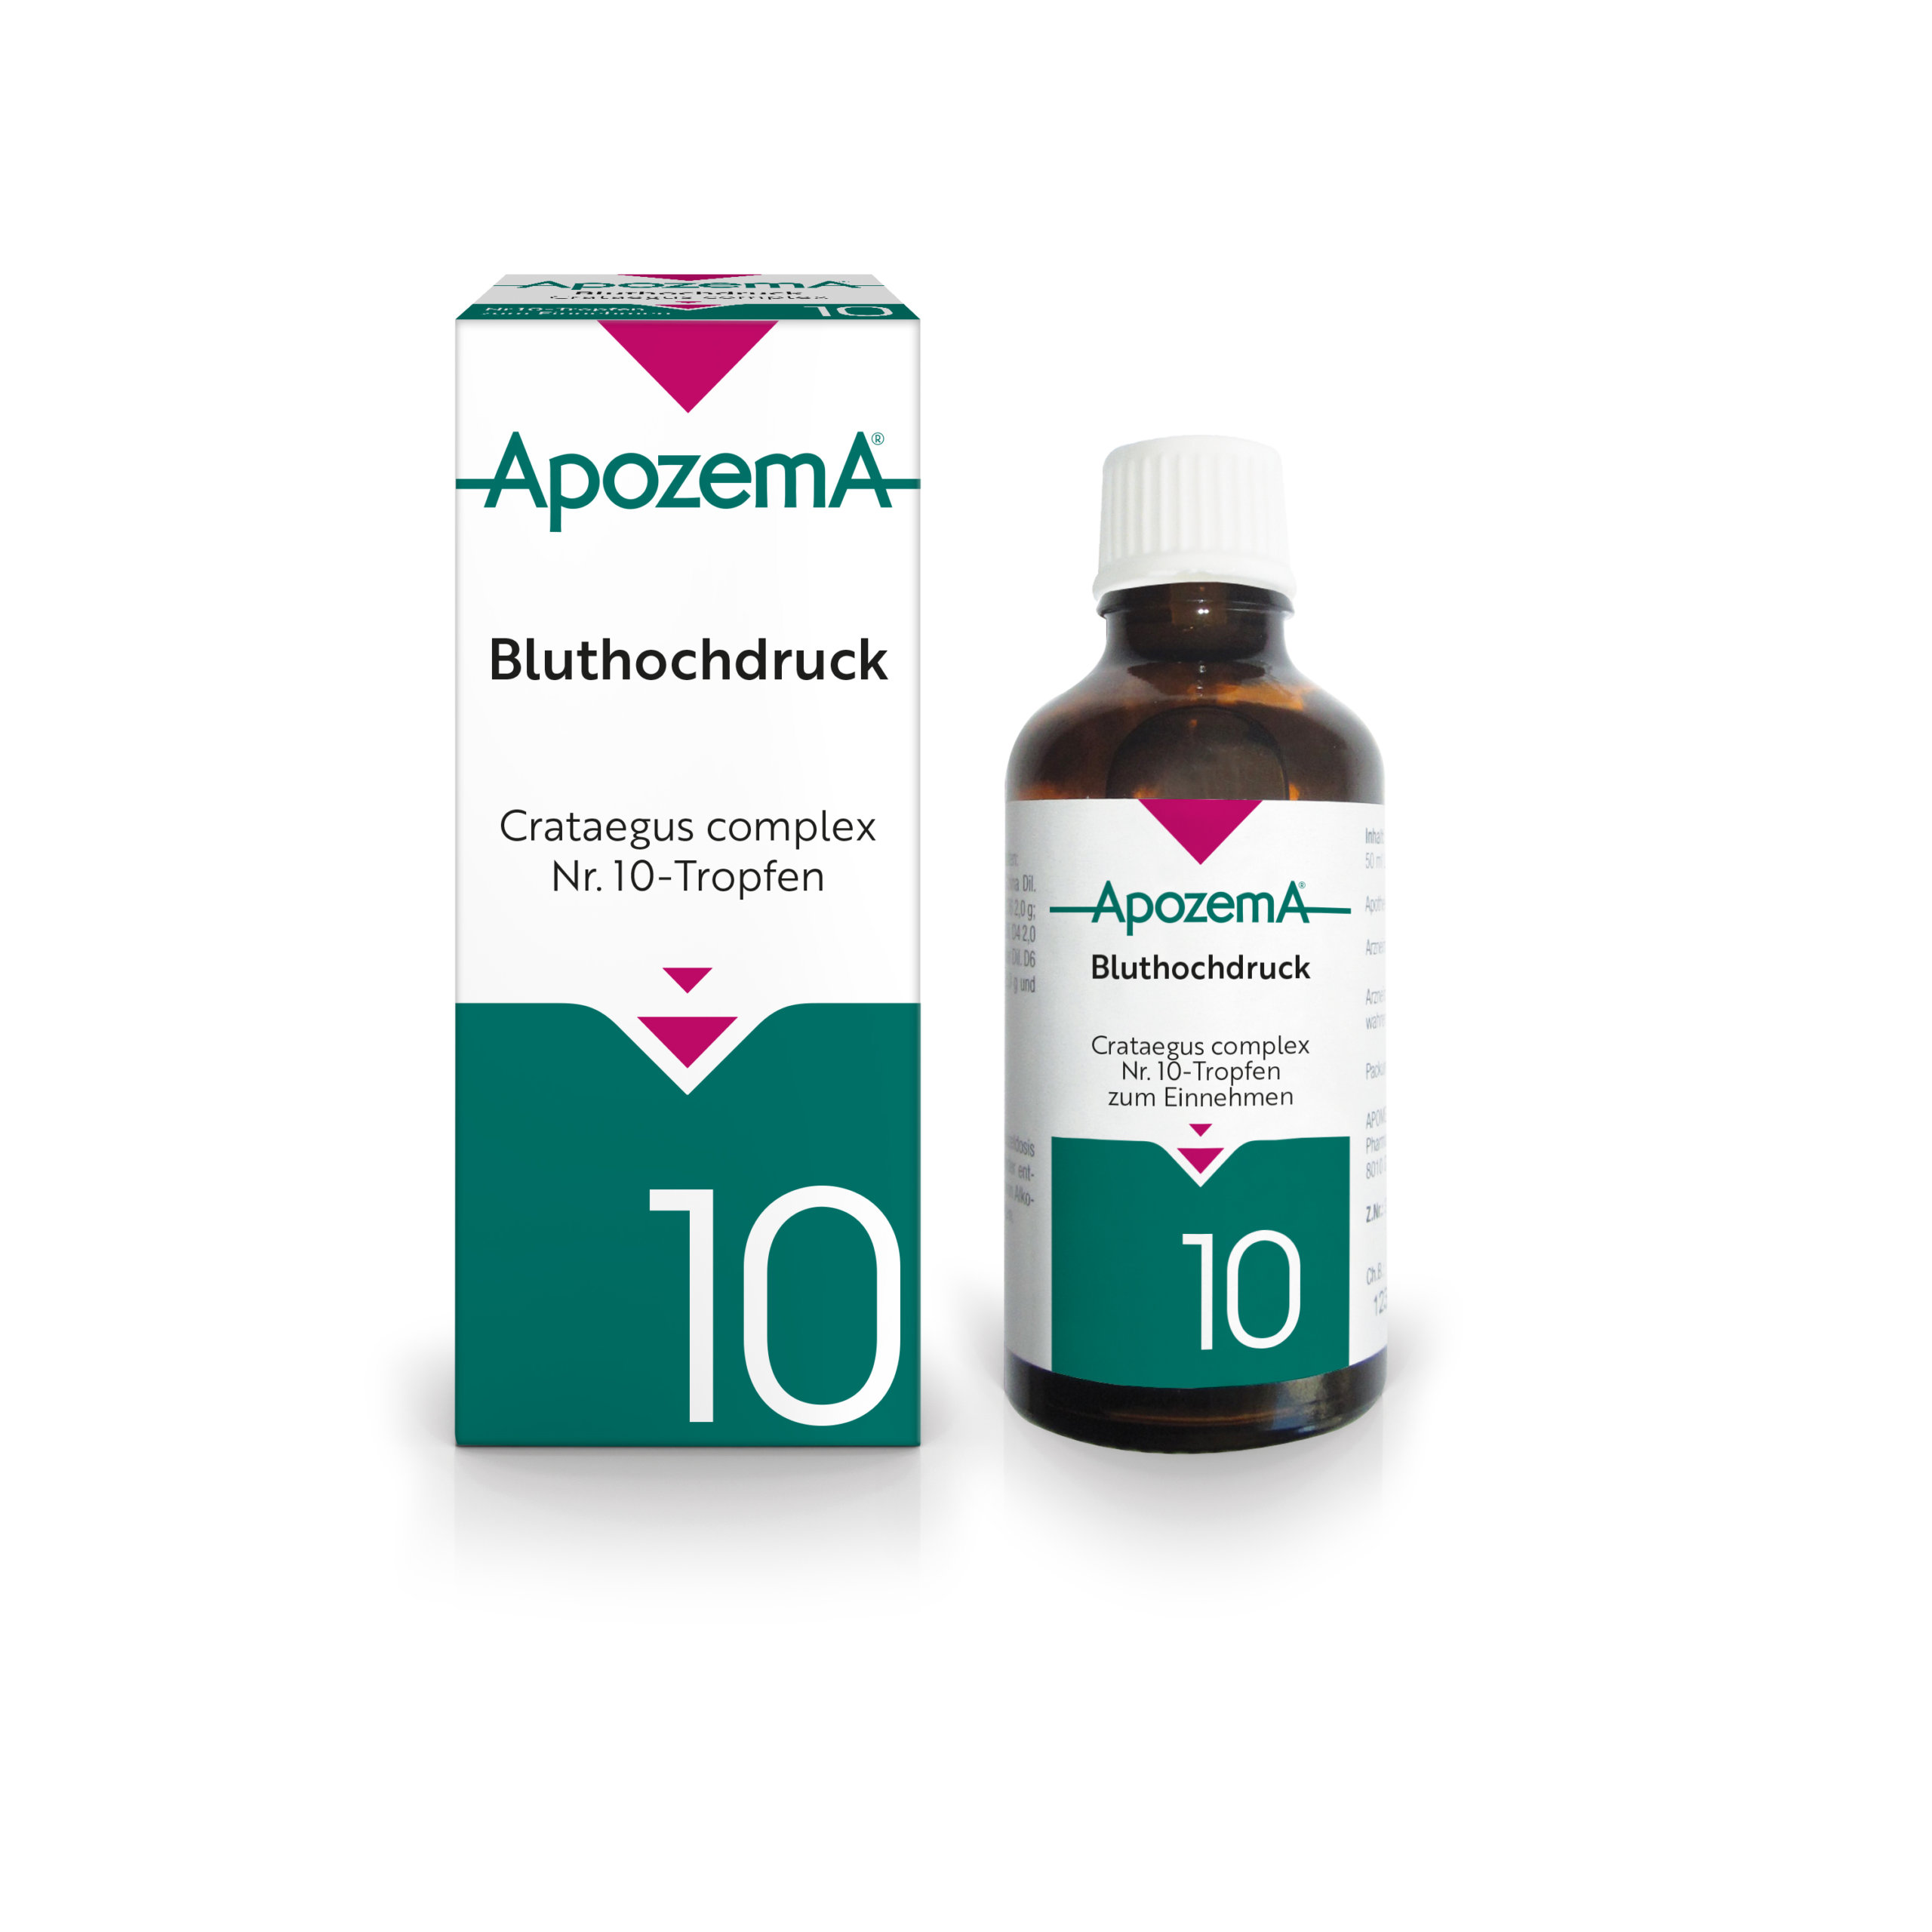 Apozema® Bluthochdruck; Crataegus complex Nr. 10-Tropfen